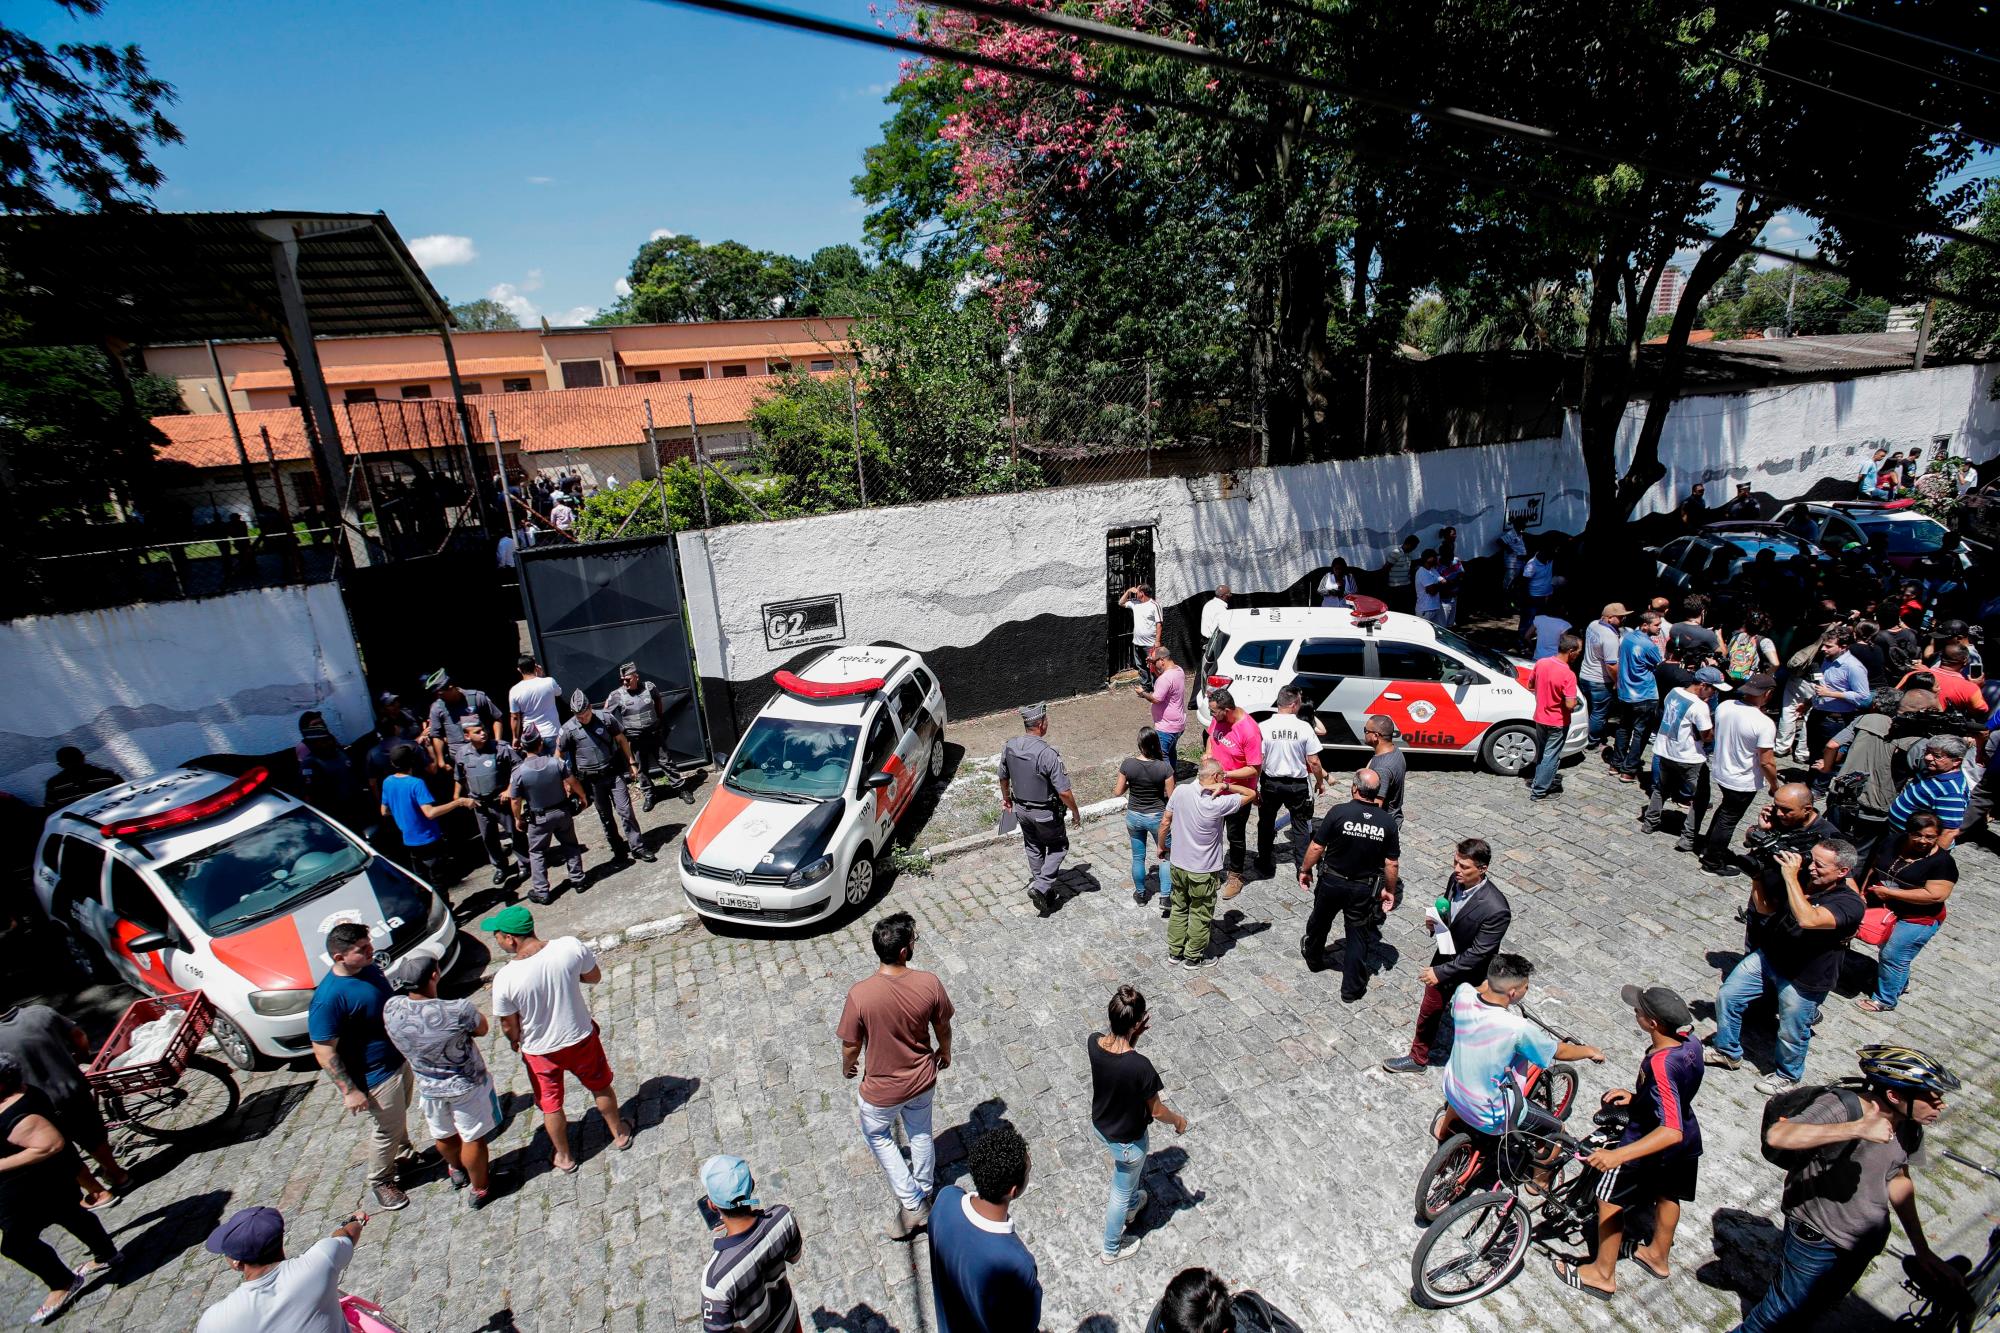 La Policía monta guardia en una escuela tras un tiroteo, este miércoles, en la región metropolitana de Sao Paulo (Brasil). El número de muertos en el tiroteo subió a diez y el de heridos se situó también en diez, informaron este miércoles las autoridades brasileñas en un balance provisional. Según la Policía Militar de Sao Paulo, al menos cinco adolescentes murieron dentro de la escuela secundaria, un empleado de la institución y los dos autores de los disparos, que se suicidaron en los pasillos del local. 